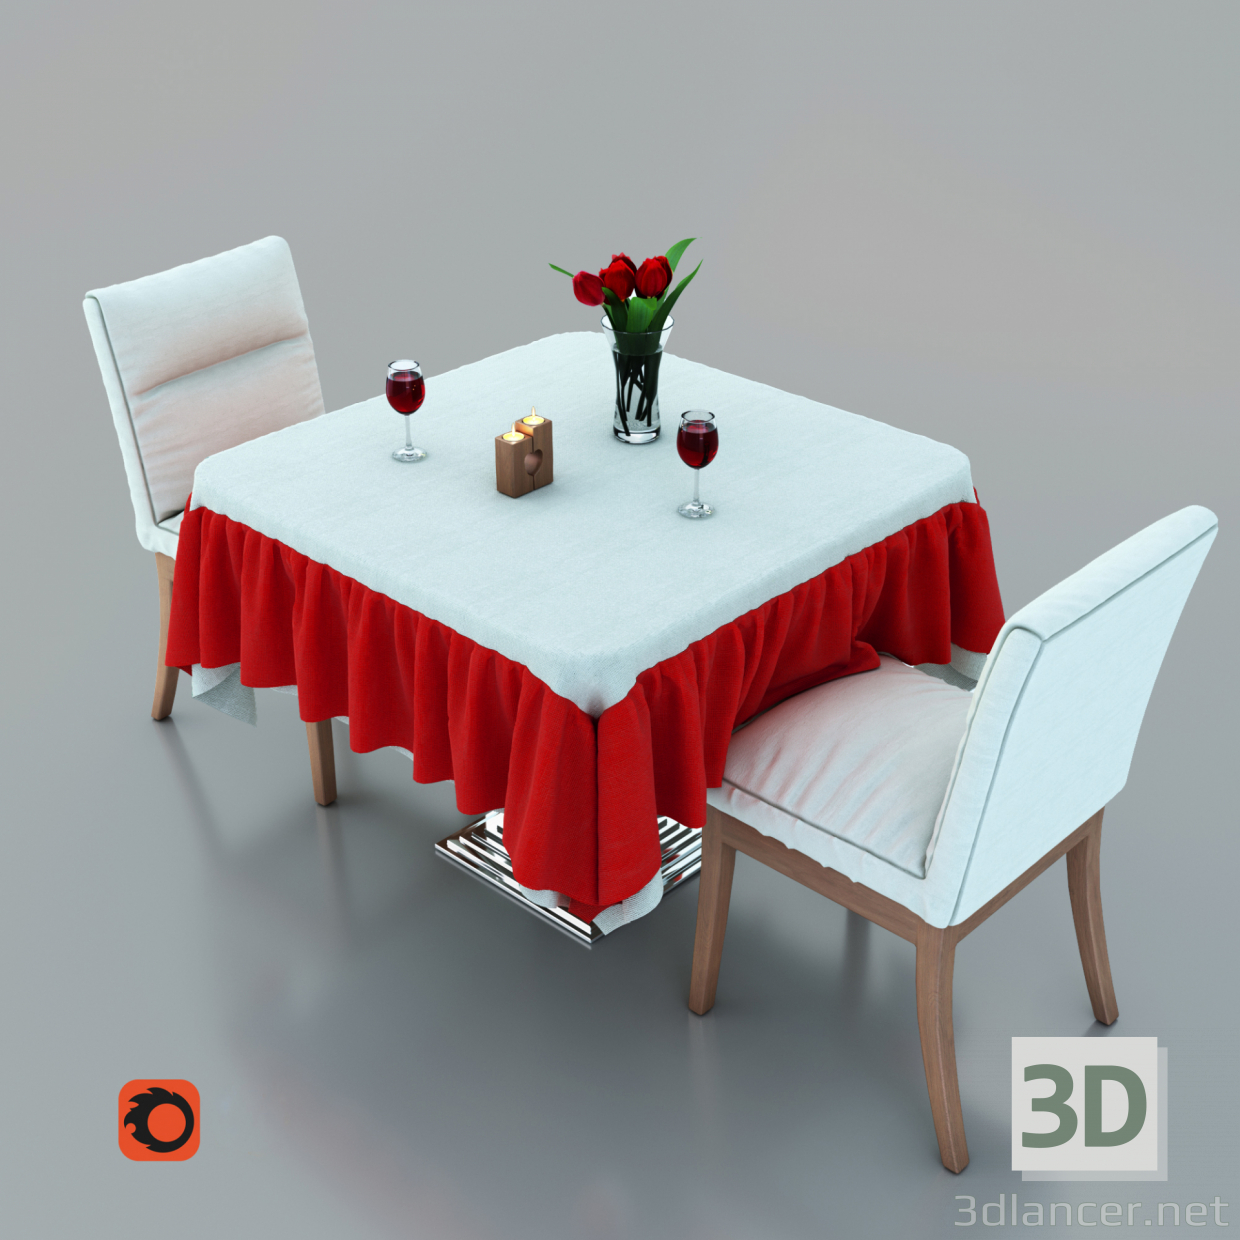 Cafe stolik 3D modelo Compro - render